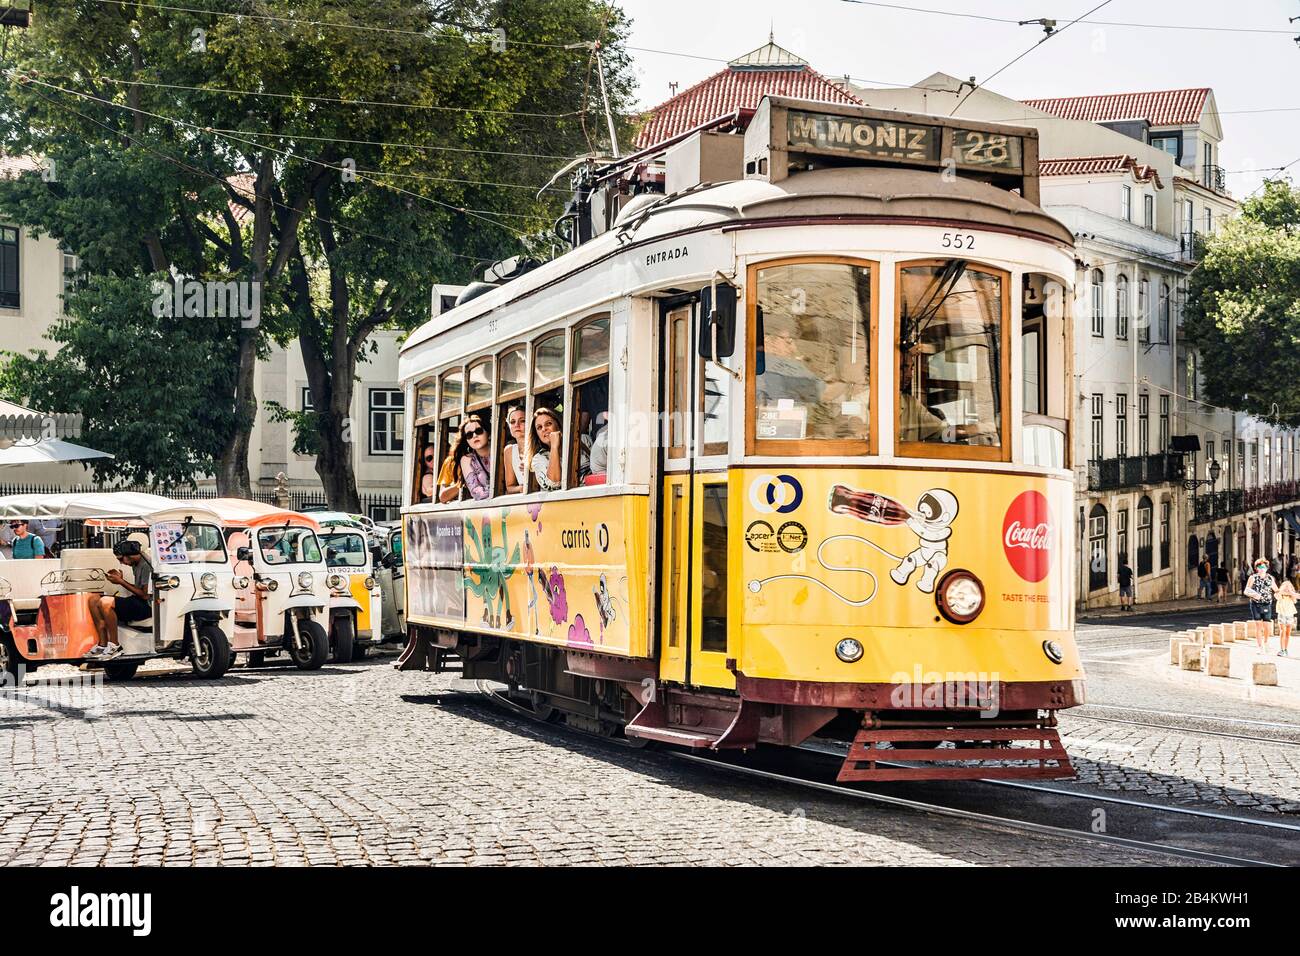 Europe, Portugal, capitale, vieille ville de Lisbonne, Alfama, Largo da Se, transports, tram, ligne historique 28, Tuk Tuks Banque D'Images